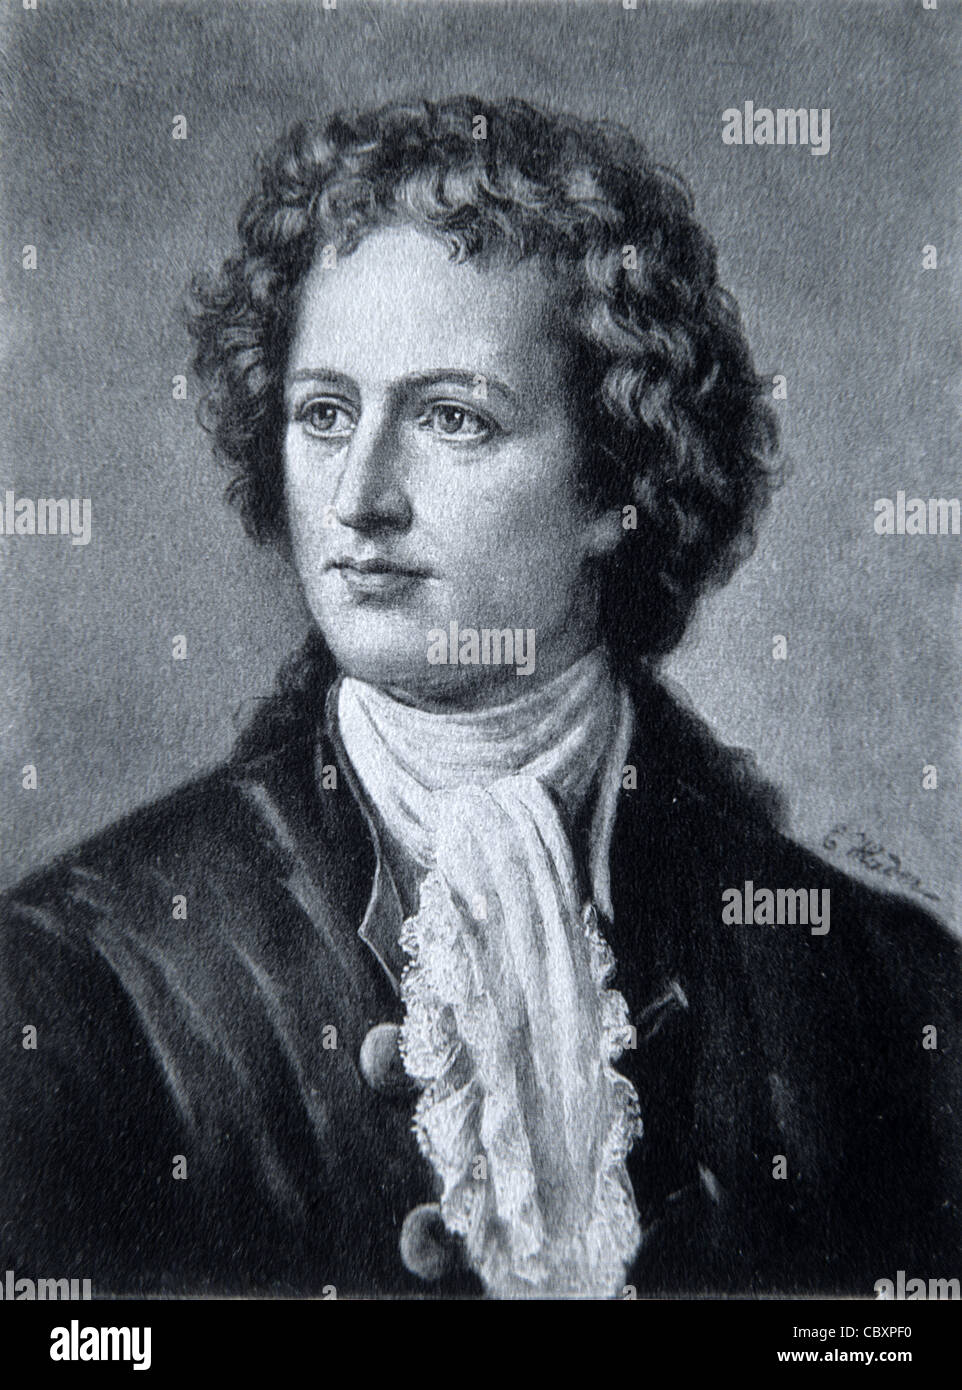 Portrait of Goethe, Johann Wolfgang von Goethe (1749-1832) German Poet, Novelist and Scientist. Vintage Illustration or Engraving Stock Photo